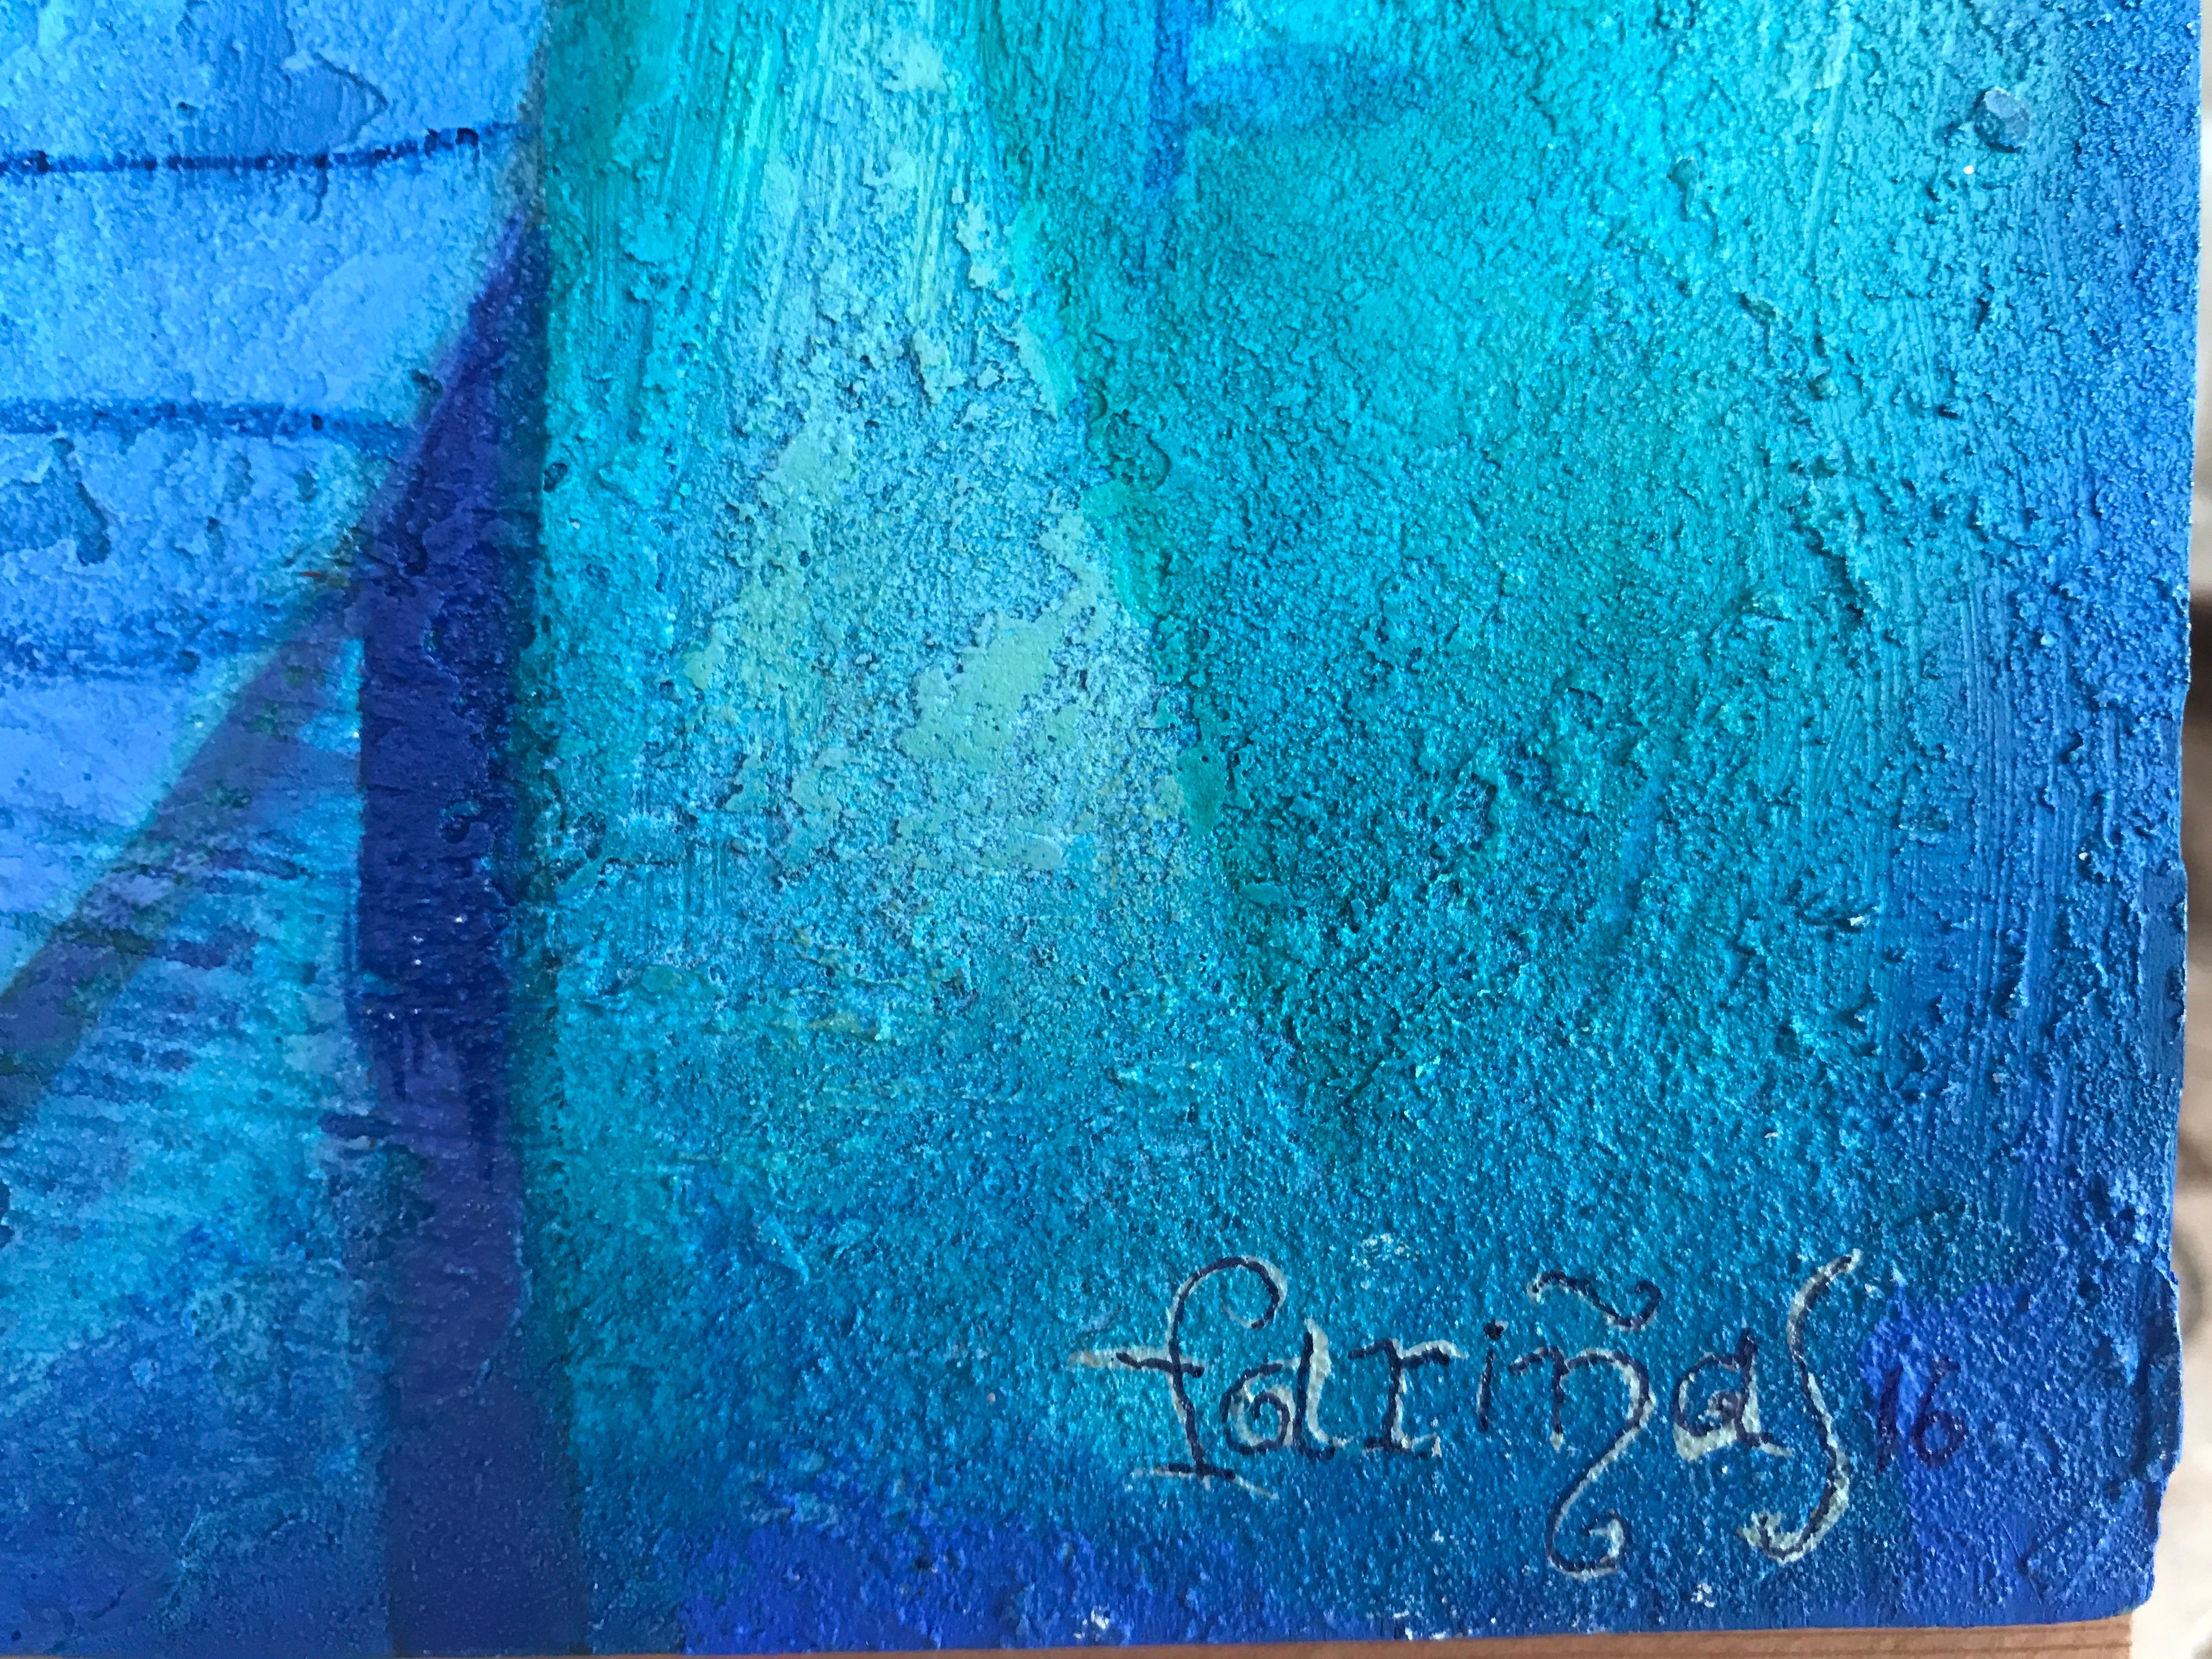 Soirée en paix. Nature morte d'art populaire bleu symbolique de Raquel Farias - Artisanat Painting par Raquel Fariñas